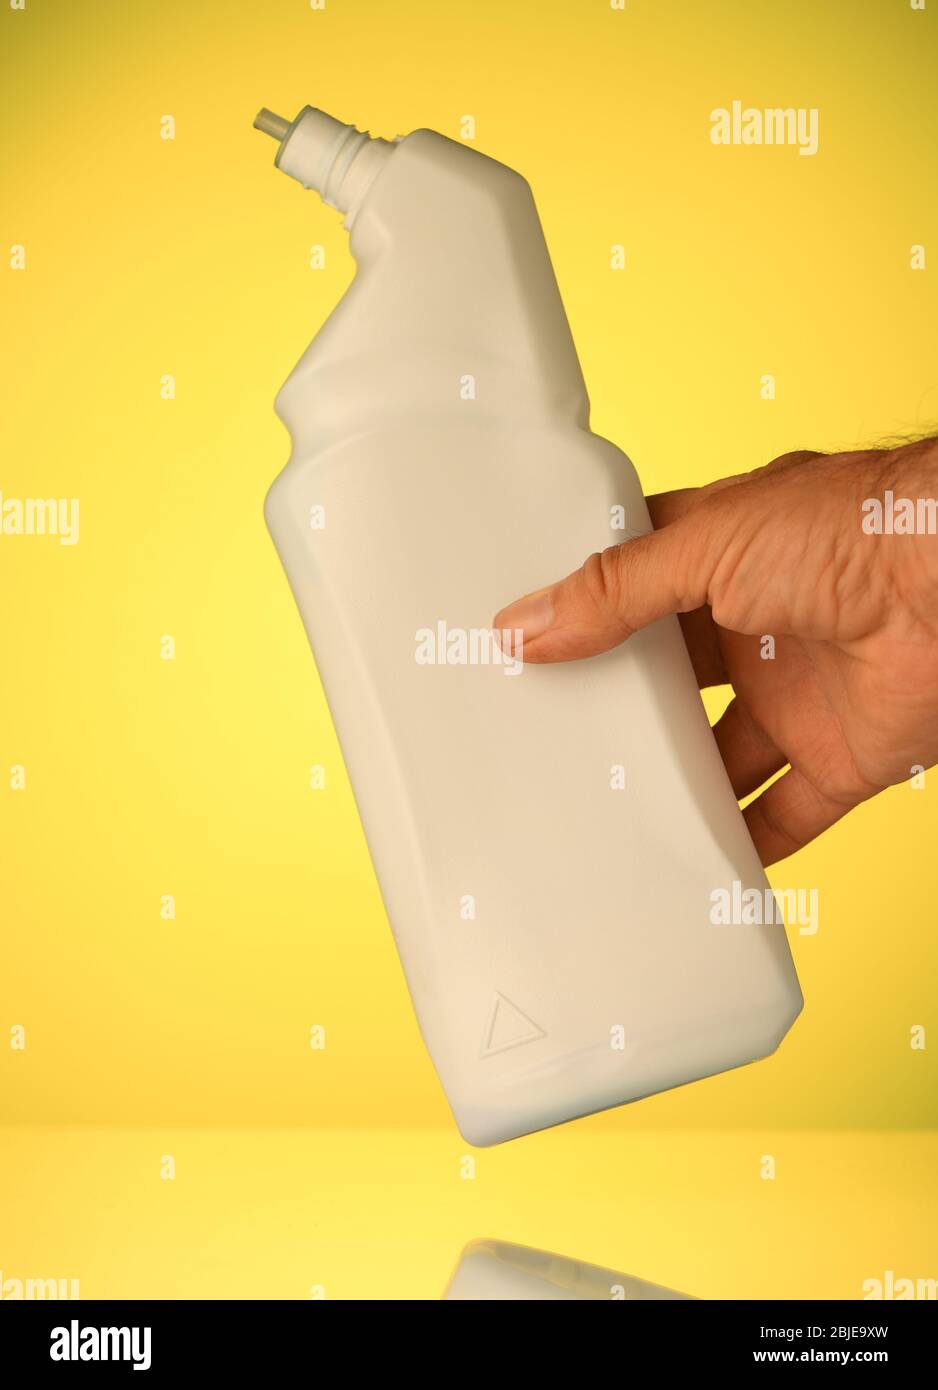 Una bottiglia bianca di plastica senza etichetta pronta ad aggiungere testo per messaggio o concetto isolato su uno sfondo giallo. Foto Stock